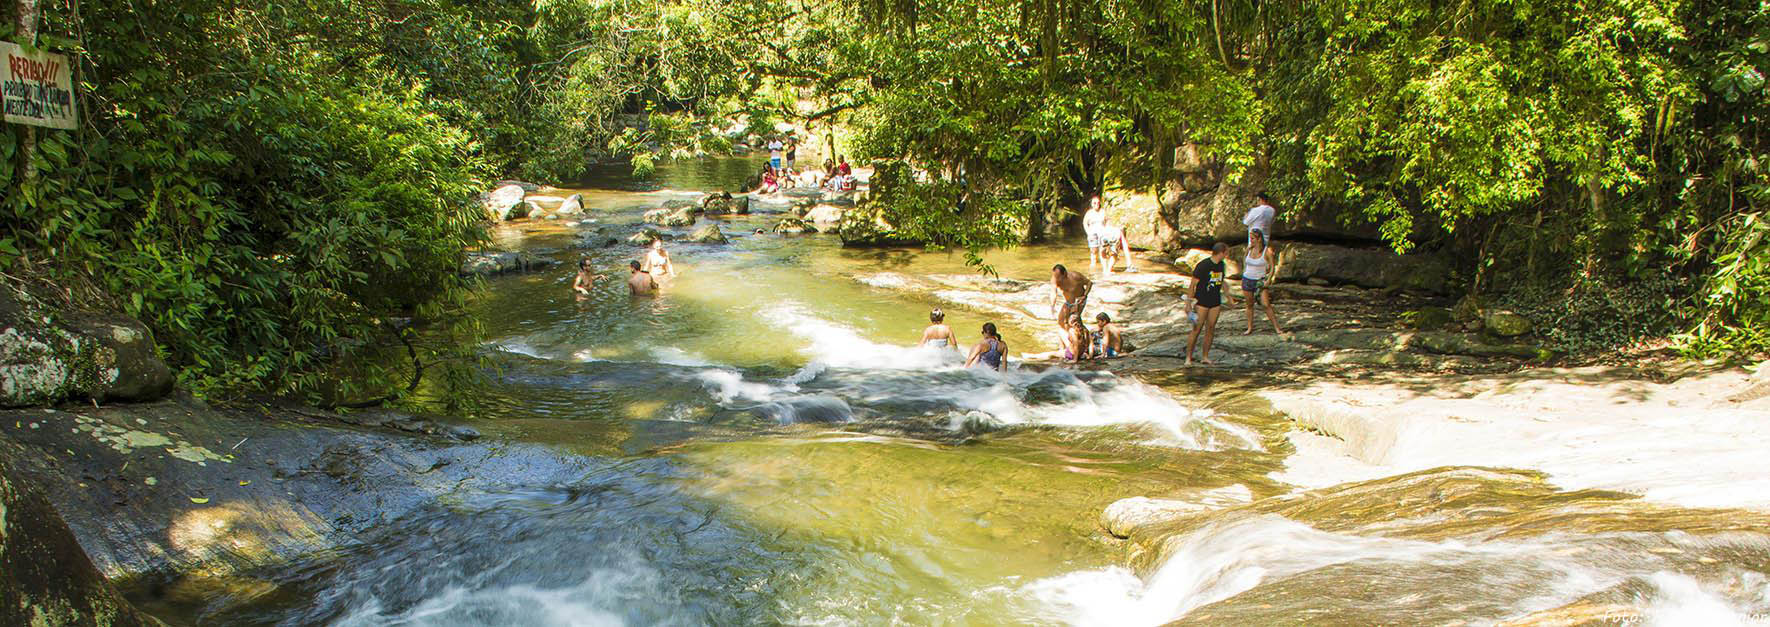 Cachoeiras incríveis em Penedo